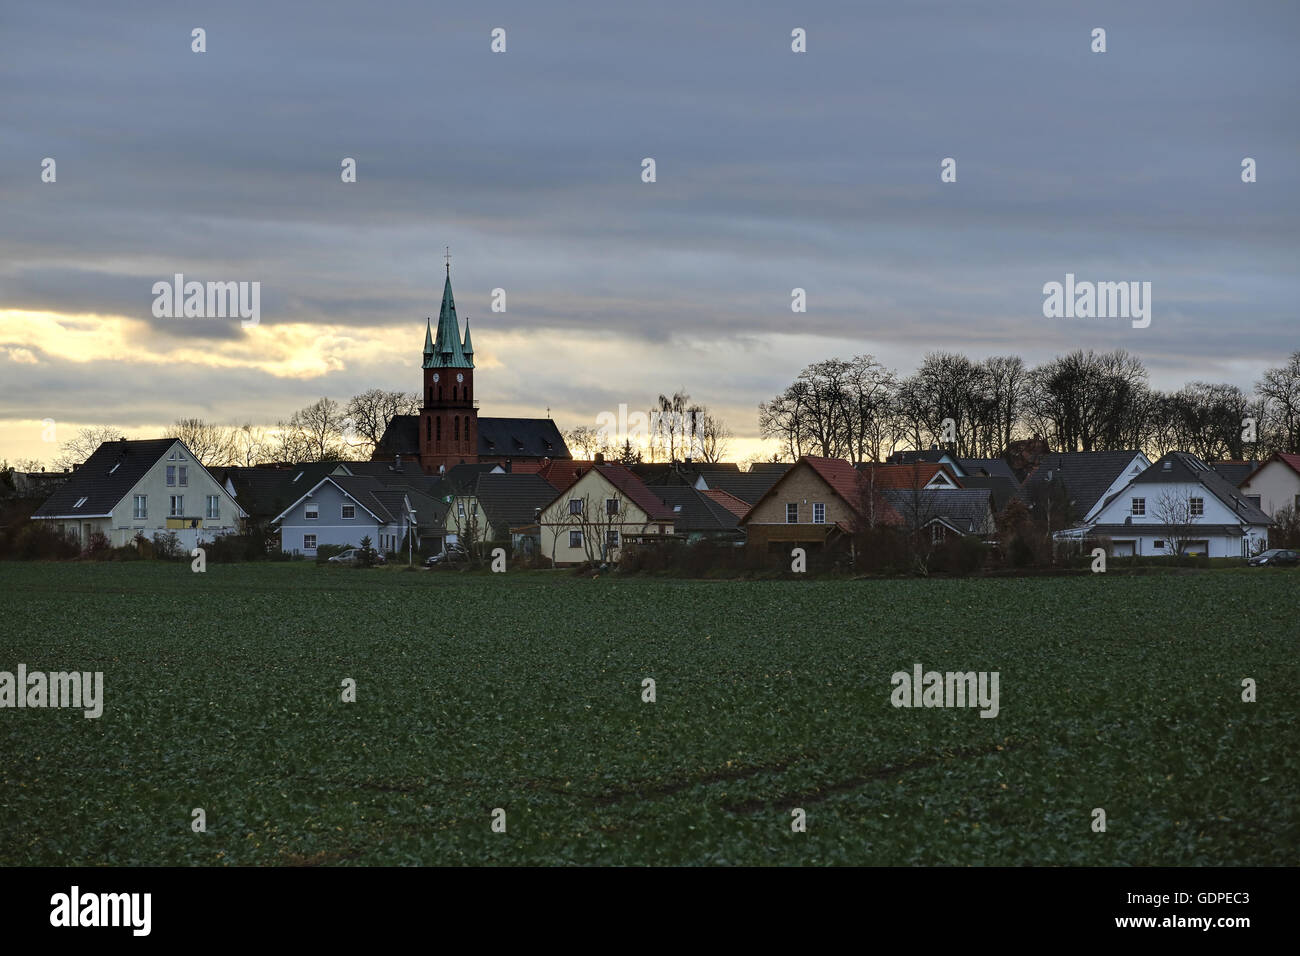 Eindrucksvolle Wolkengebilde über Magdeburg Ottersleben, Sachsen-Anhalt, Deutschland, durch ein HDR imaging Technik sichtbar gemacht. Stockfoto